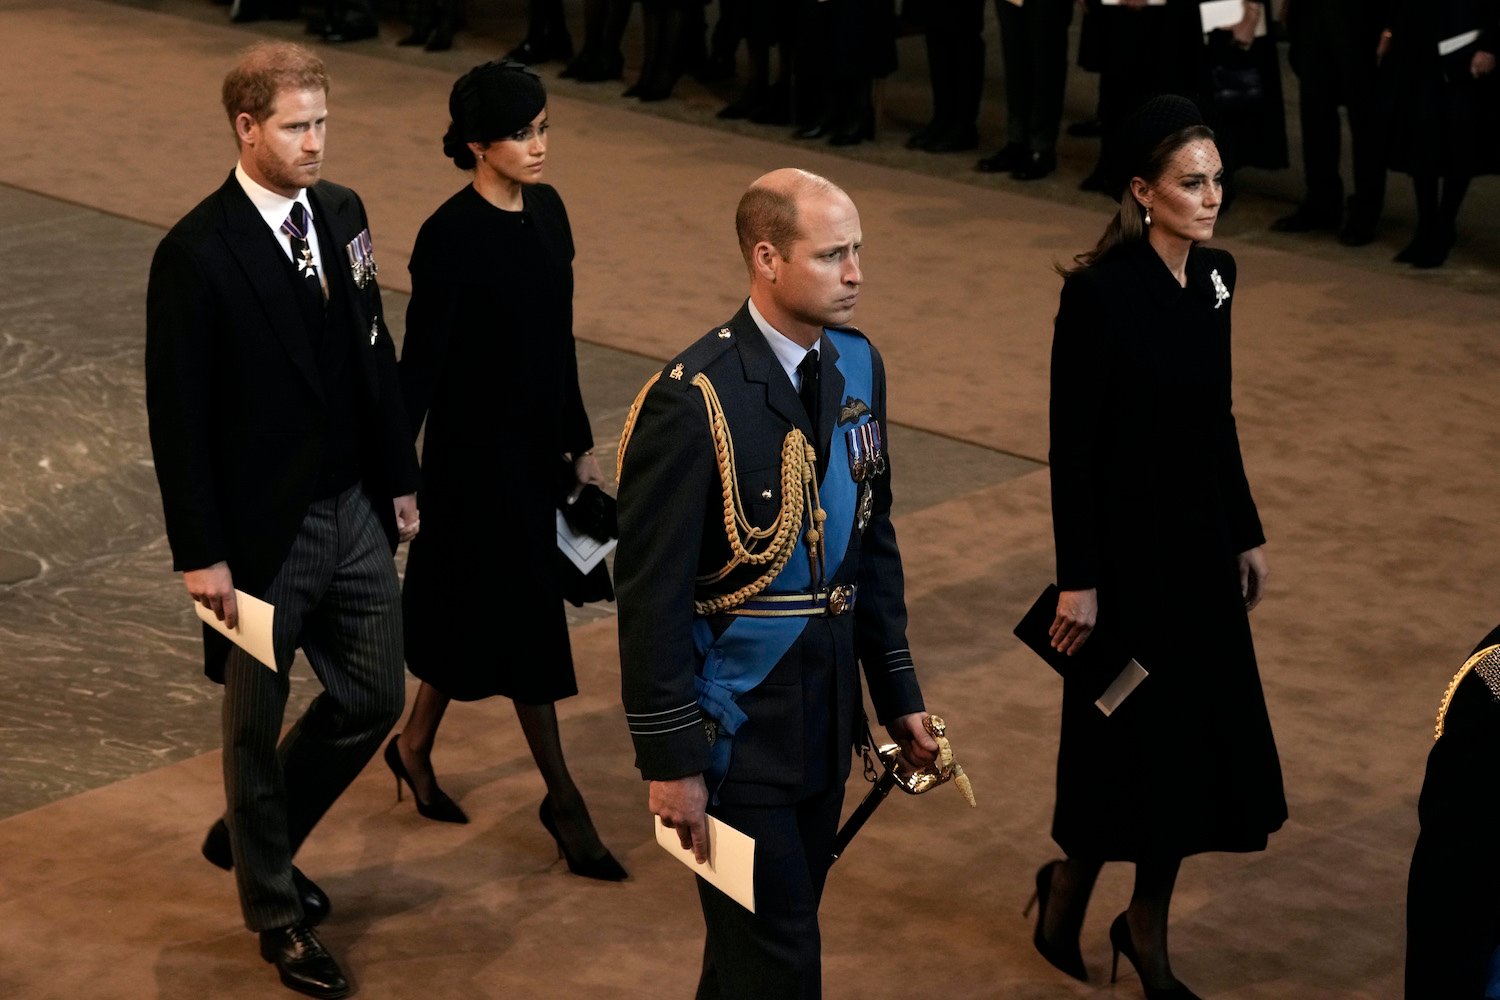 ヘンリー王子とメーガン・マークルのボディランゲージと、ウィリアム王子とケイト・ミドルトンの女王への奉仕後のボディランゲージの比較